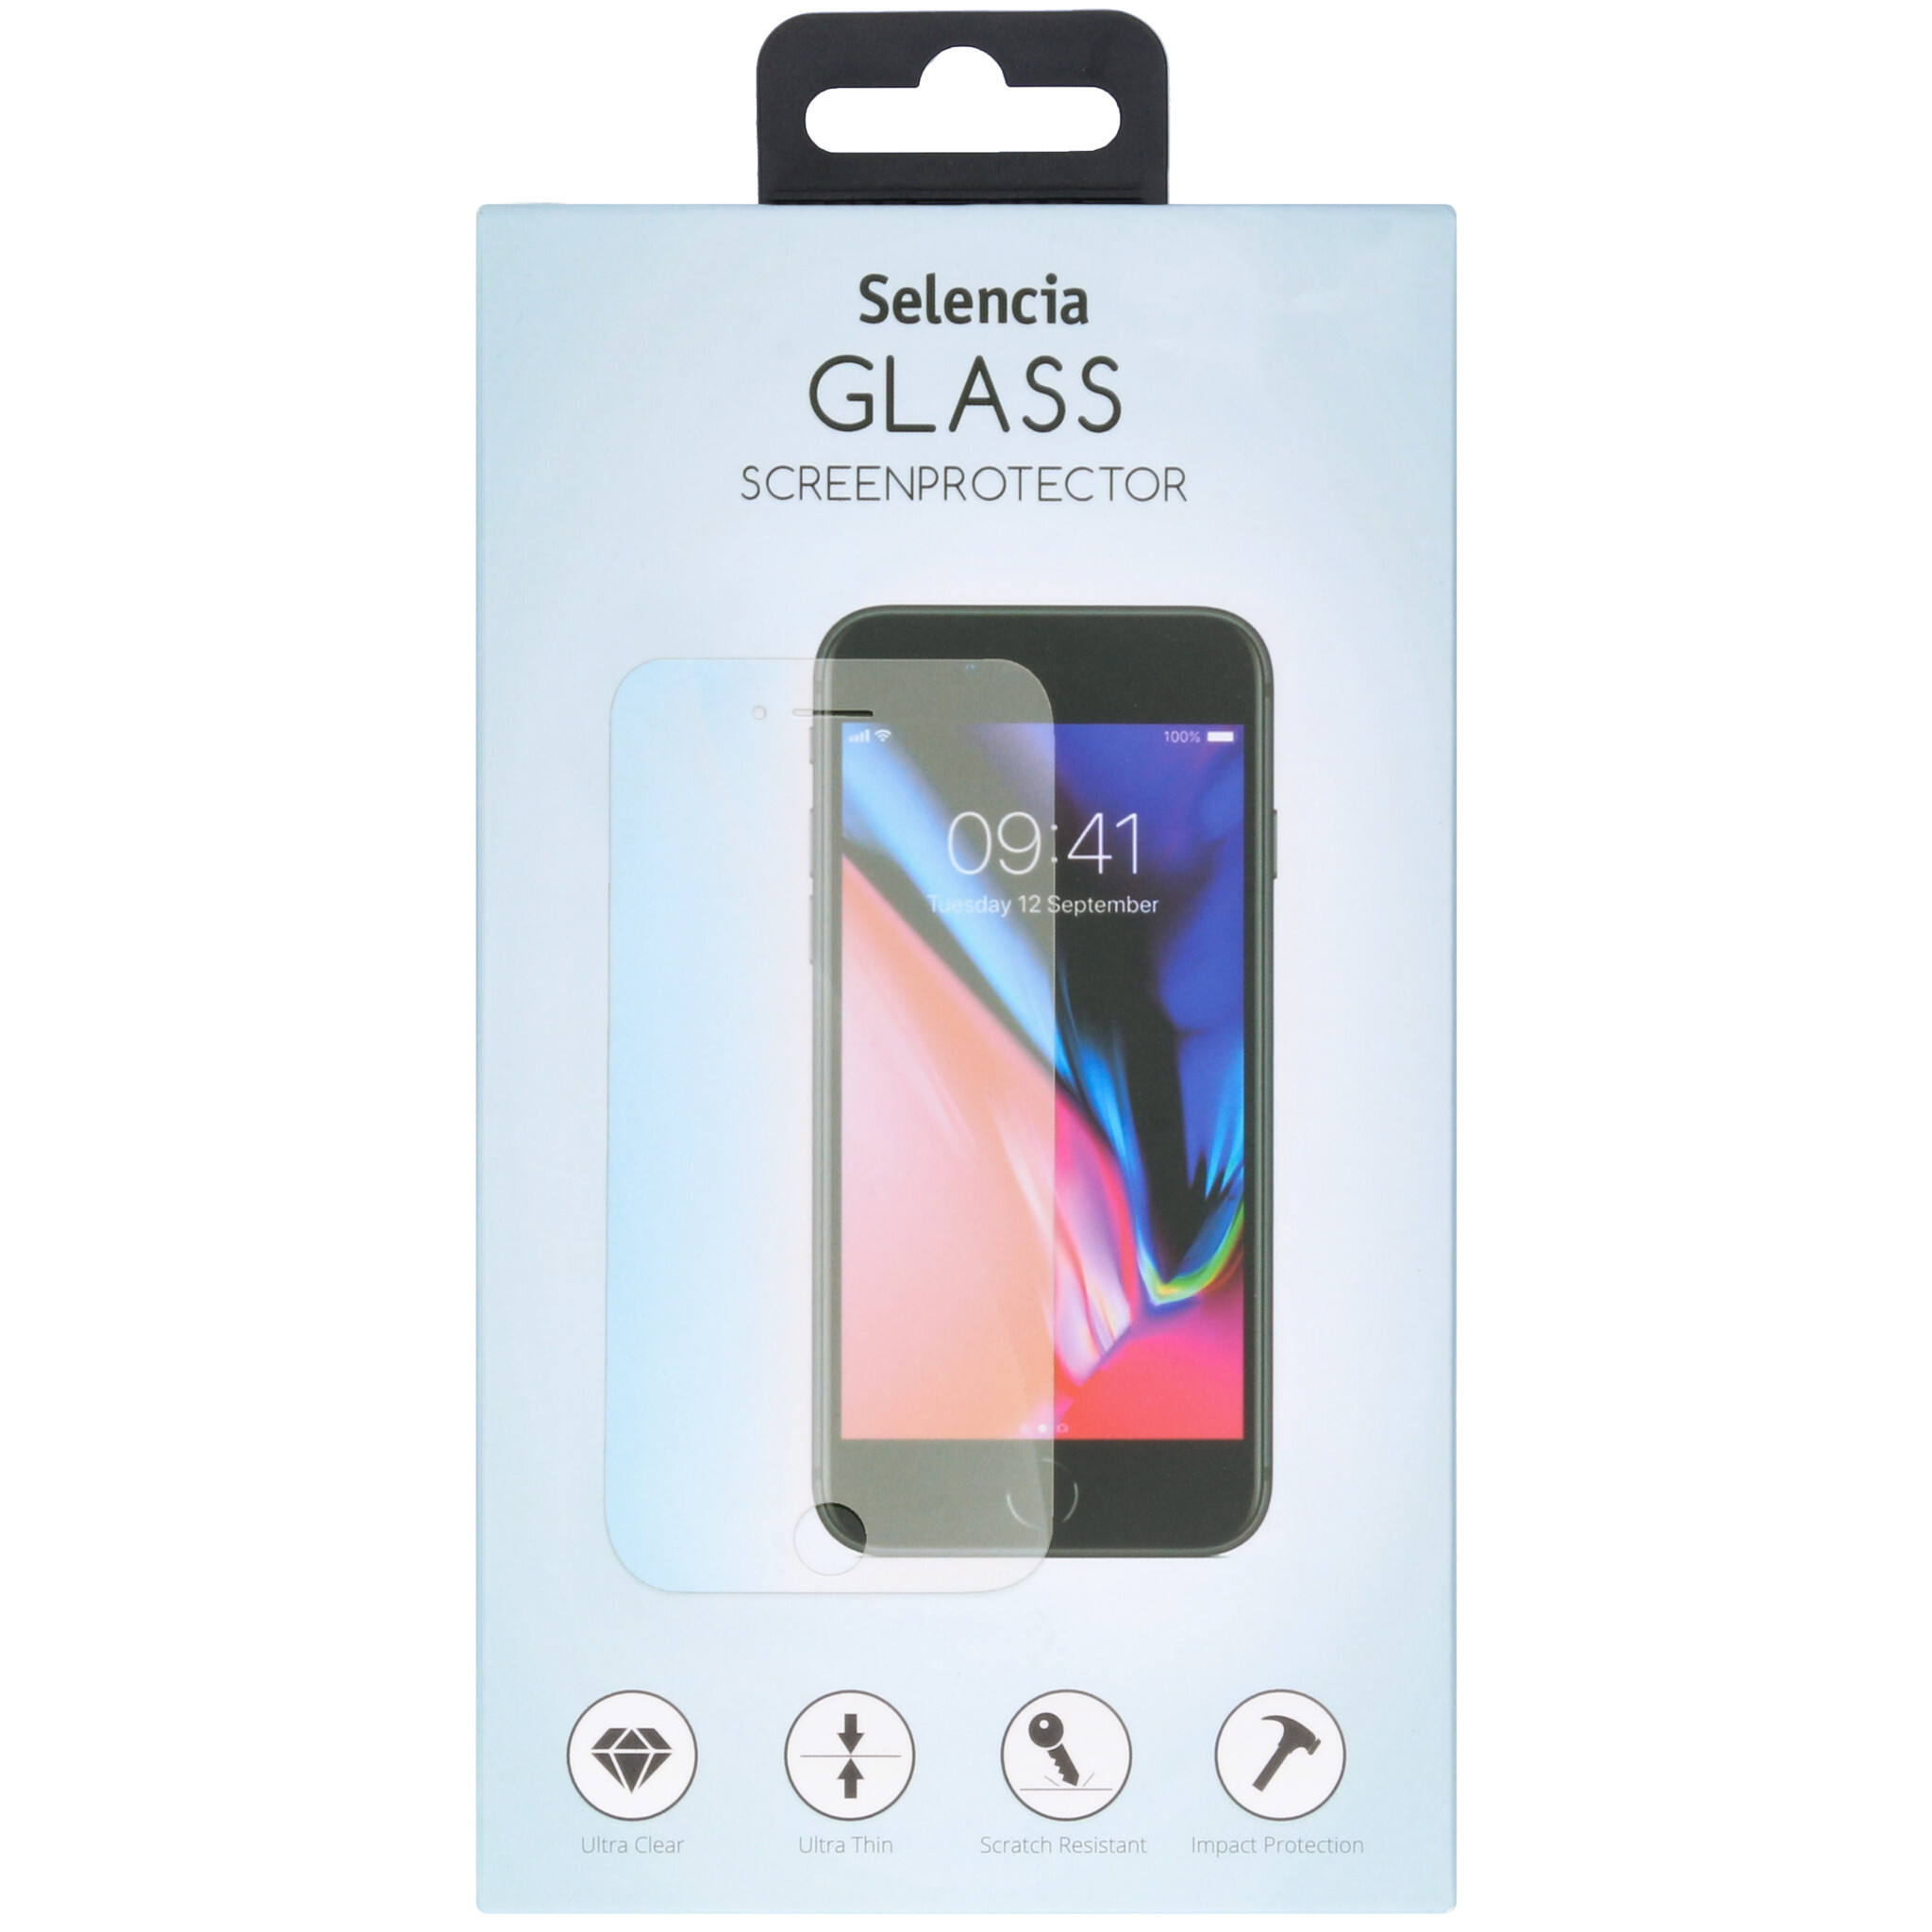 Selencia Glas Screenprotector voor de Motorola Moto E6 Play